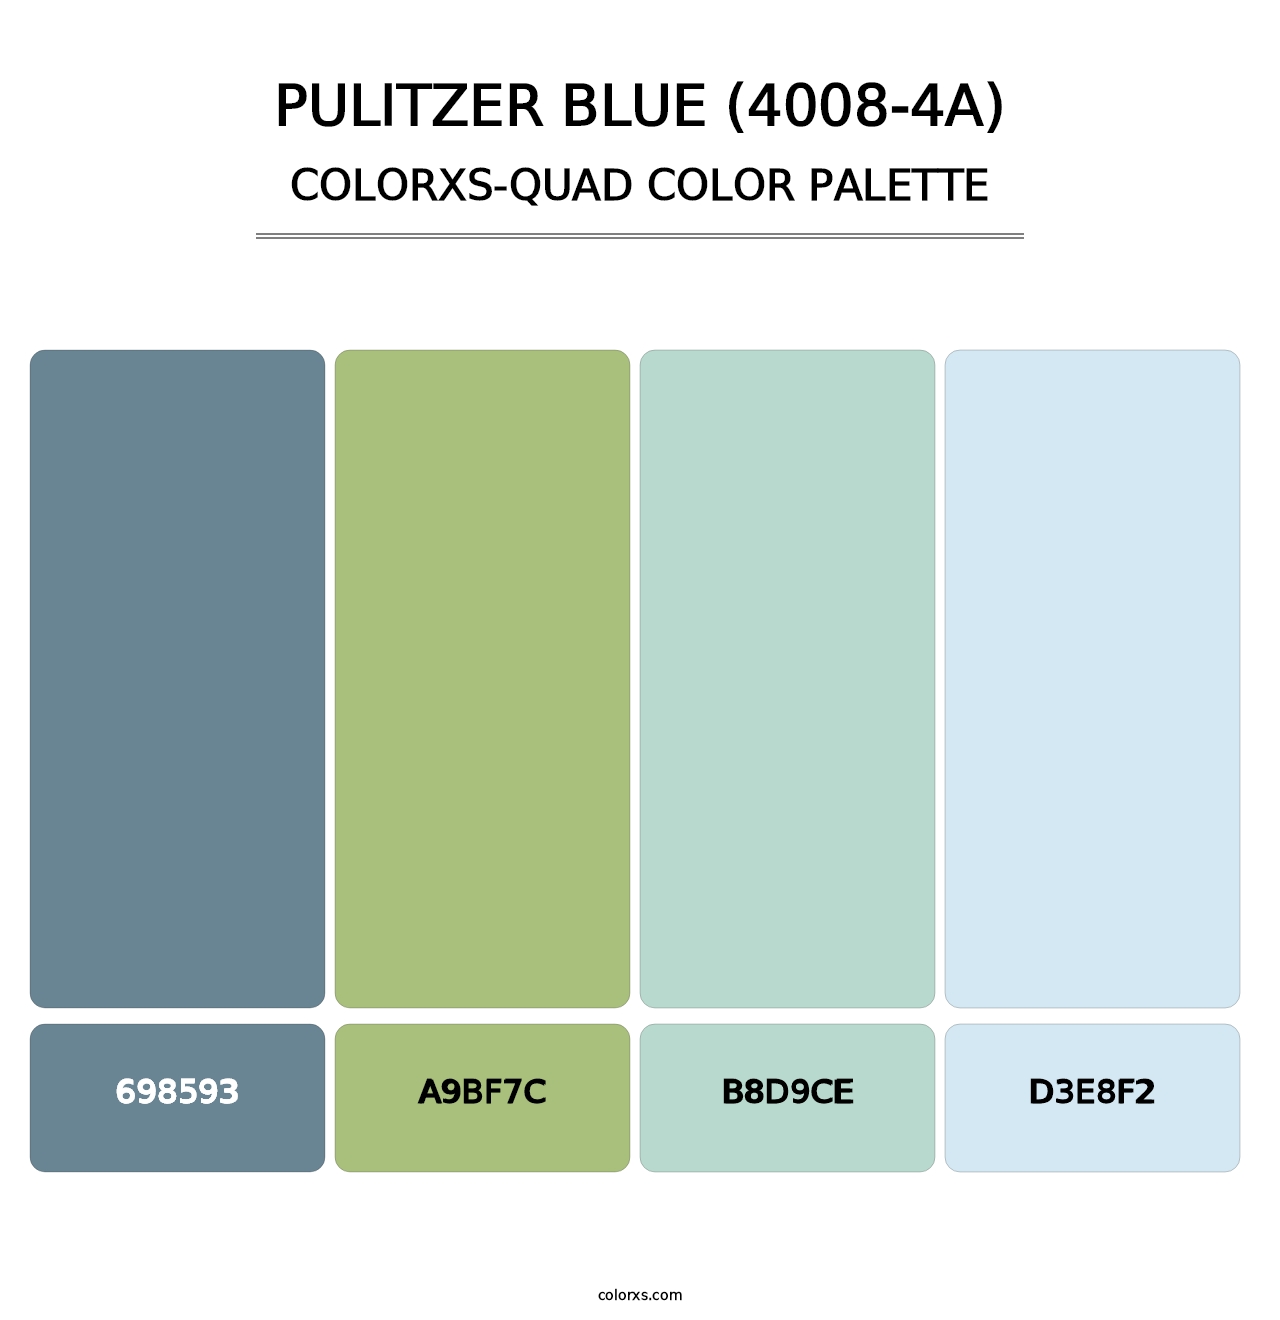 Pulitzer Blue (4008-4A) - Colorxs Quad Palette